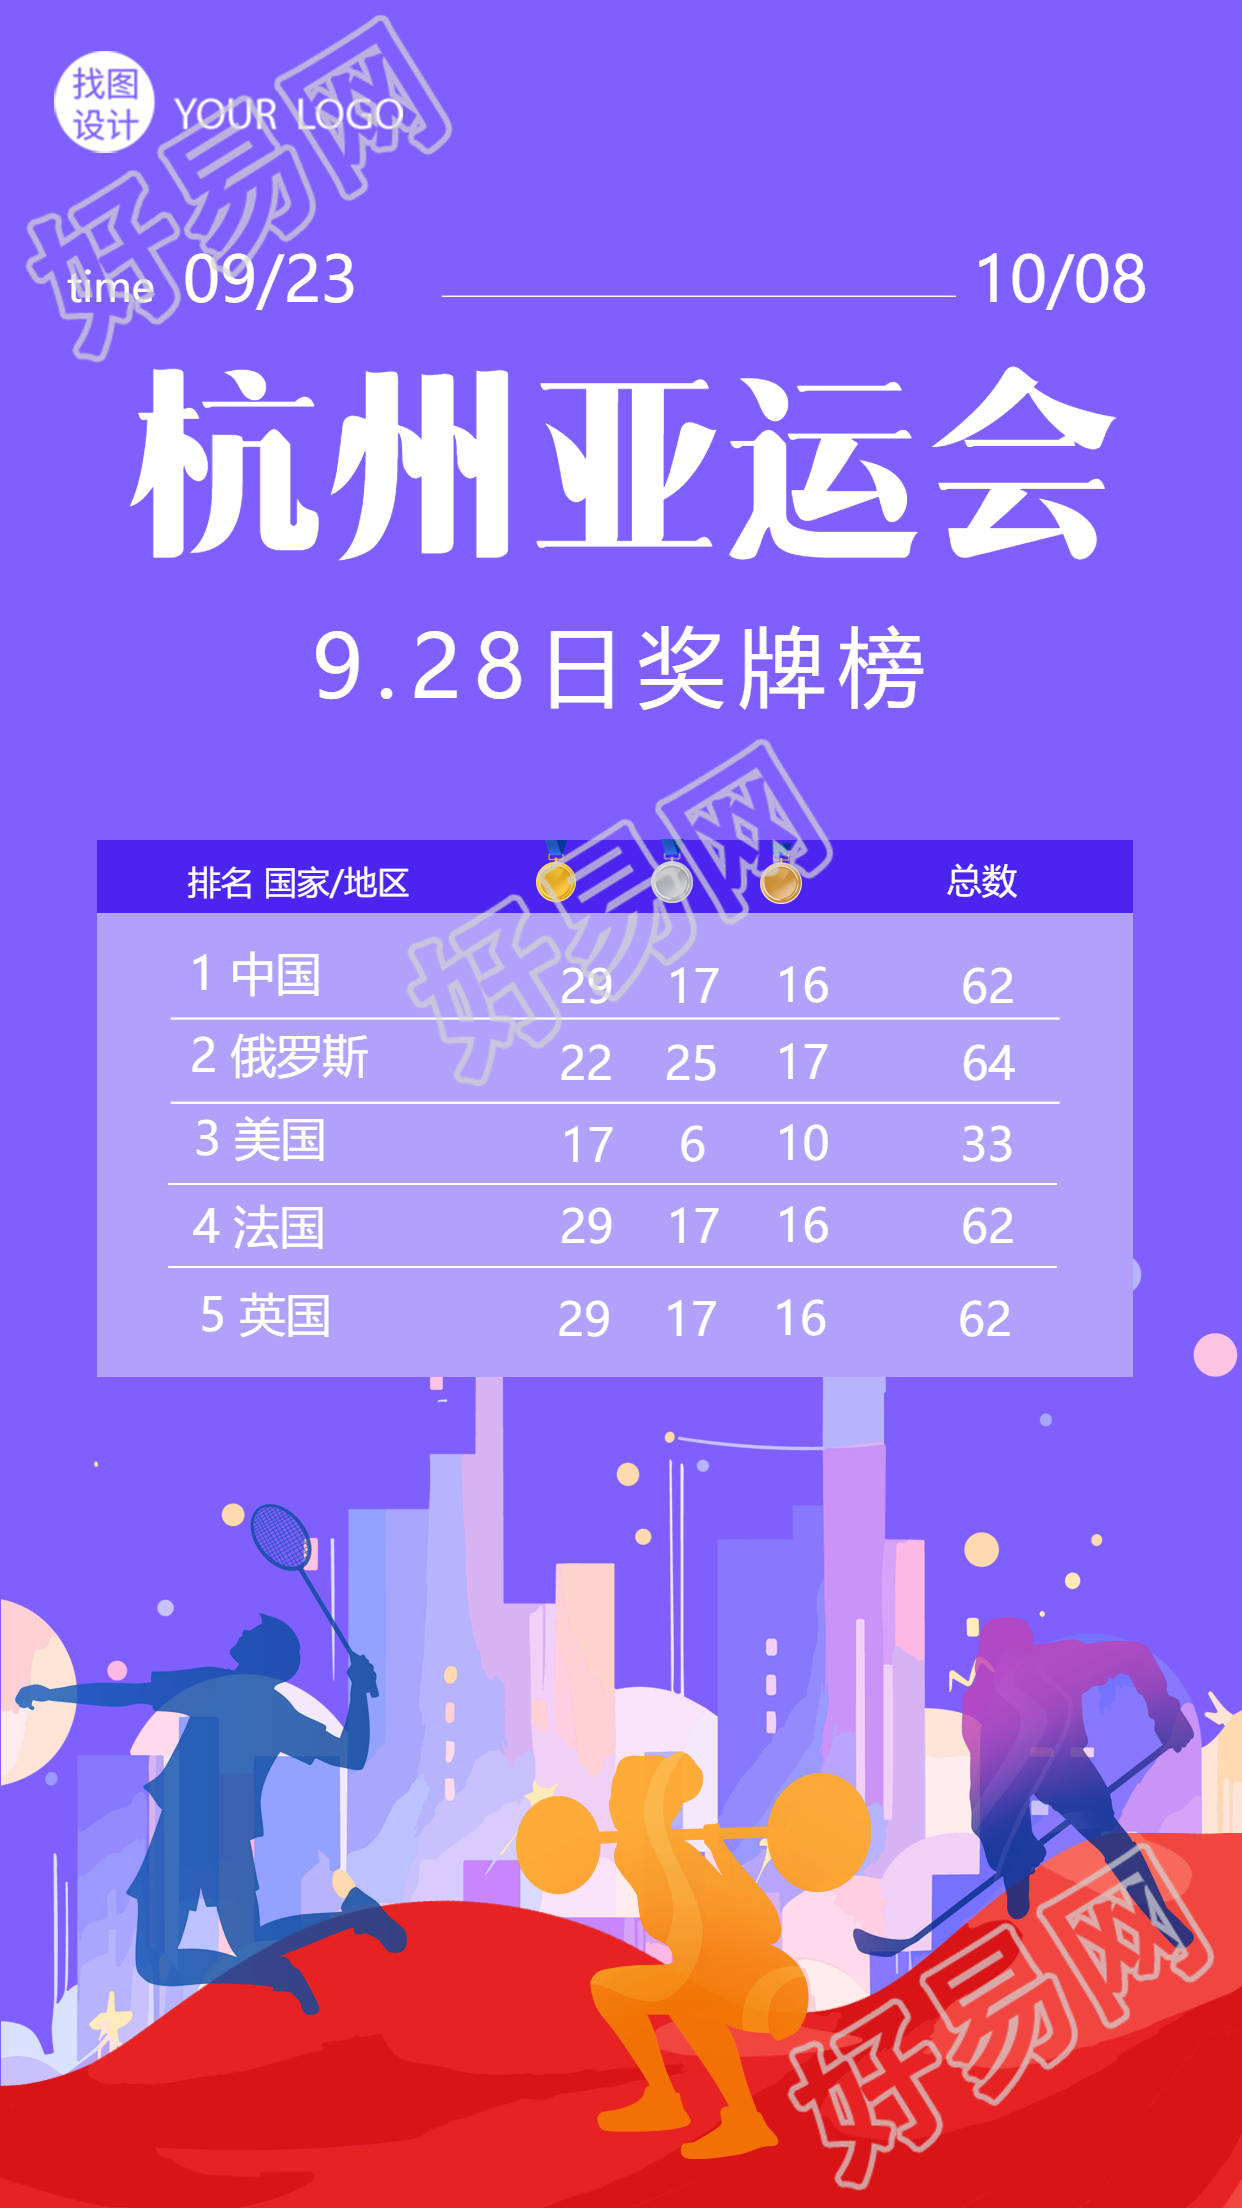 运动员剪影杭州亚运会奖牌榜展示手机海报